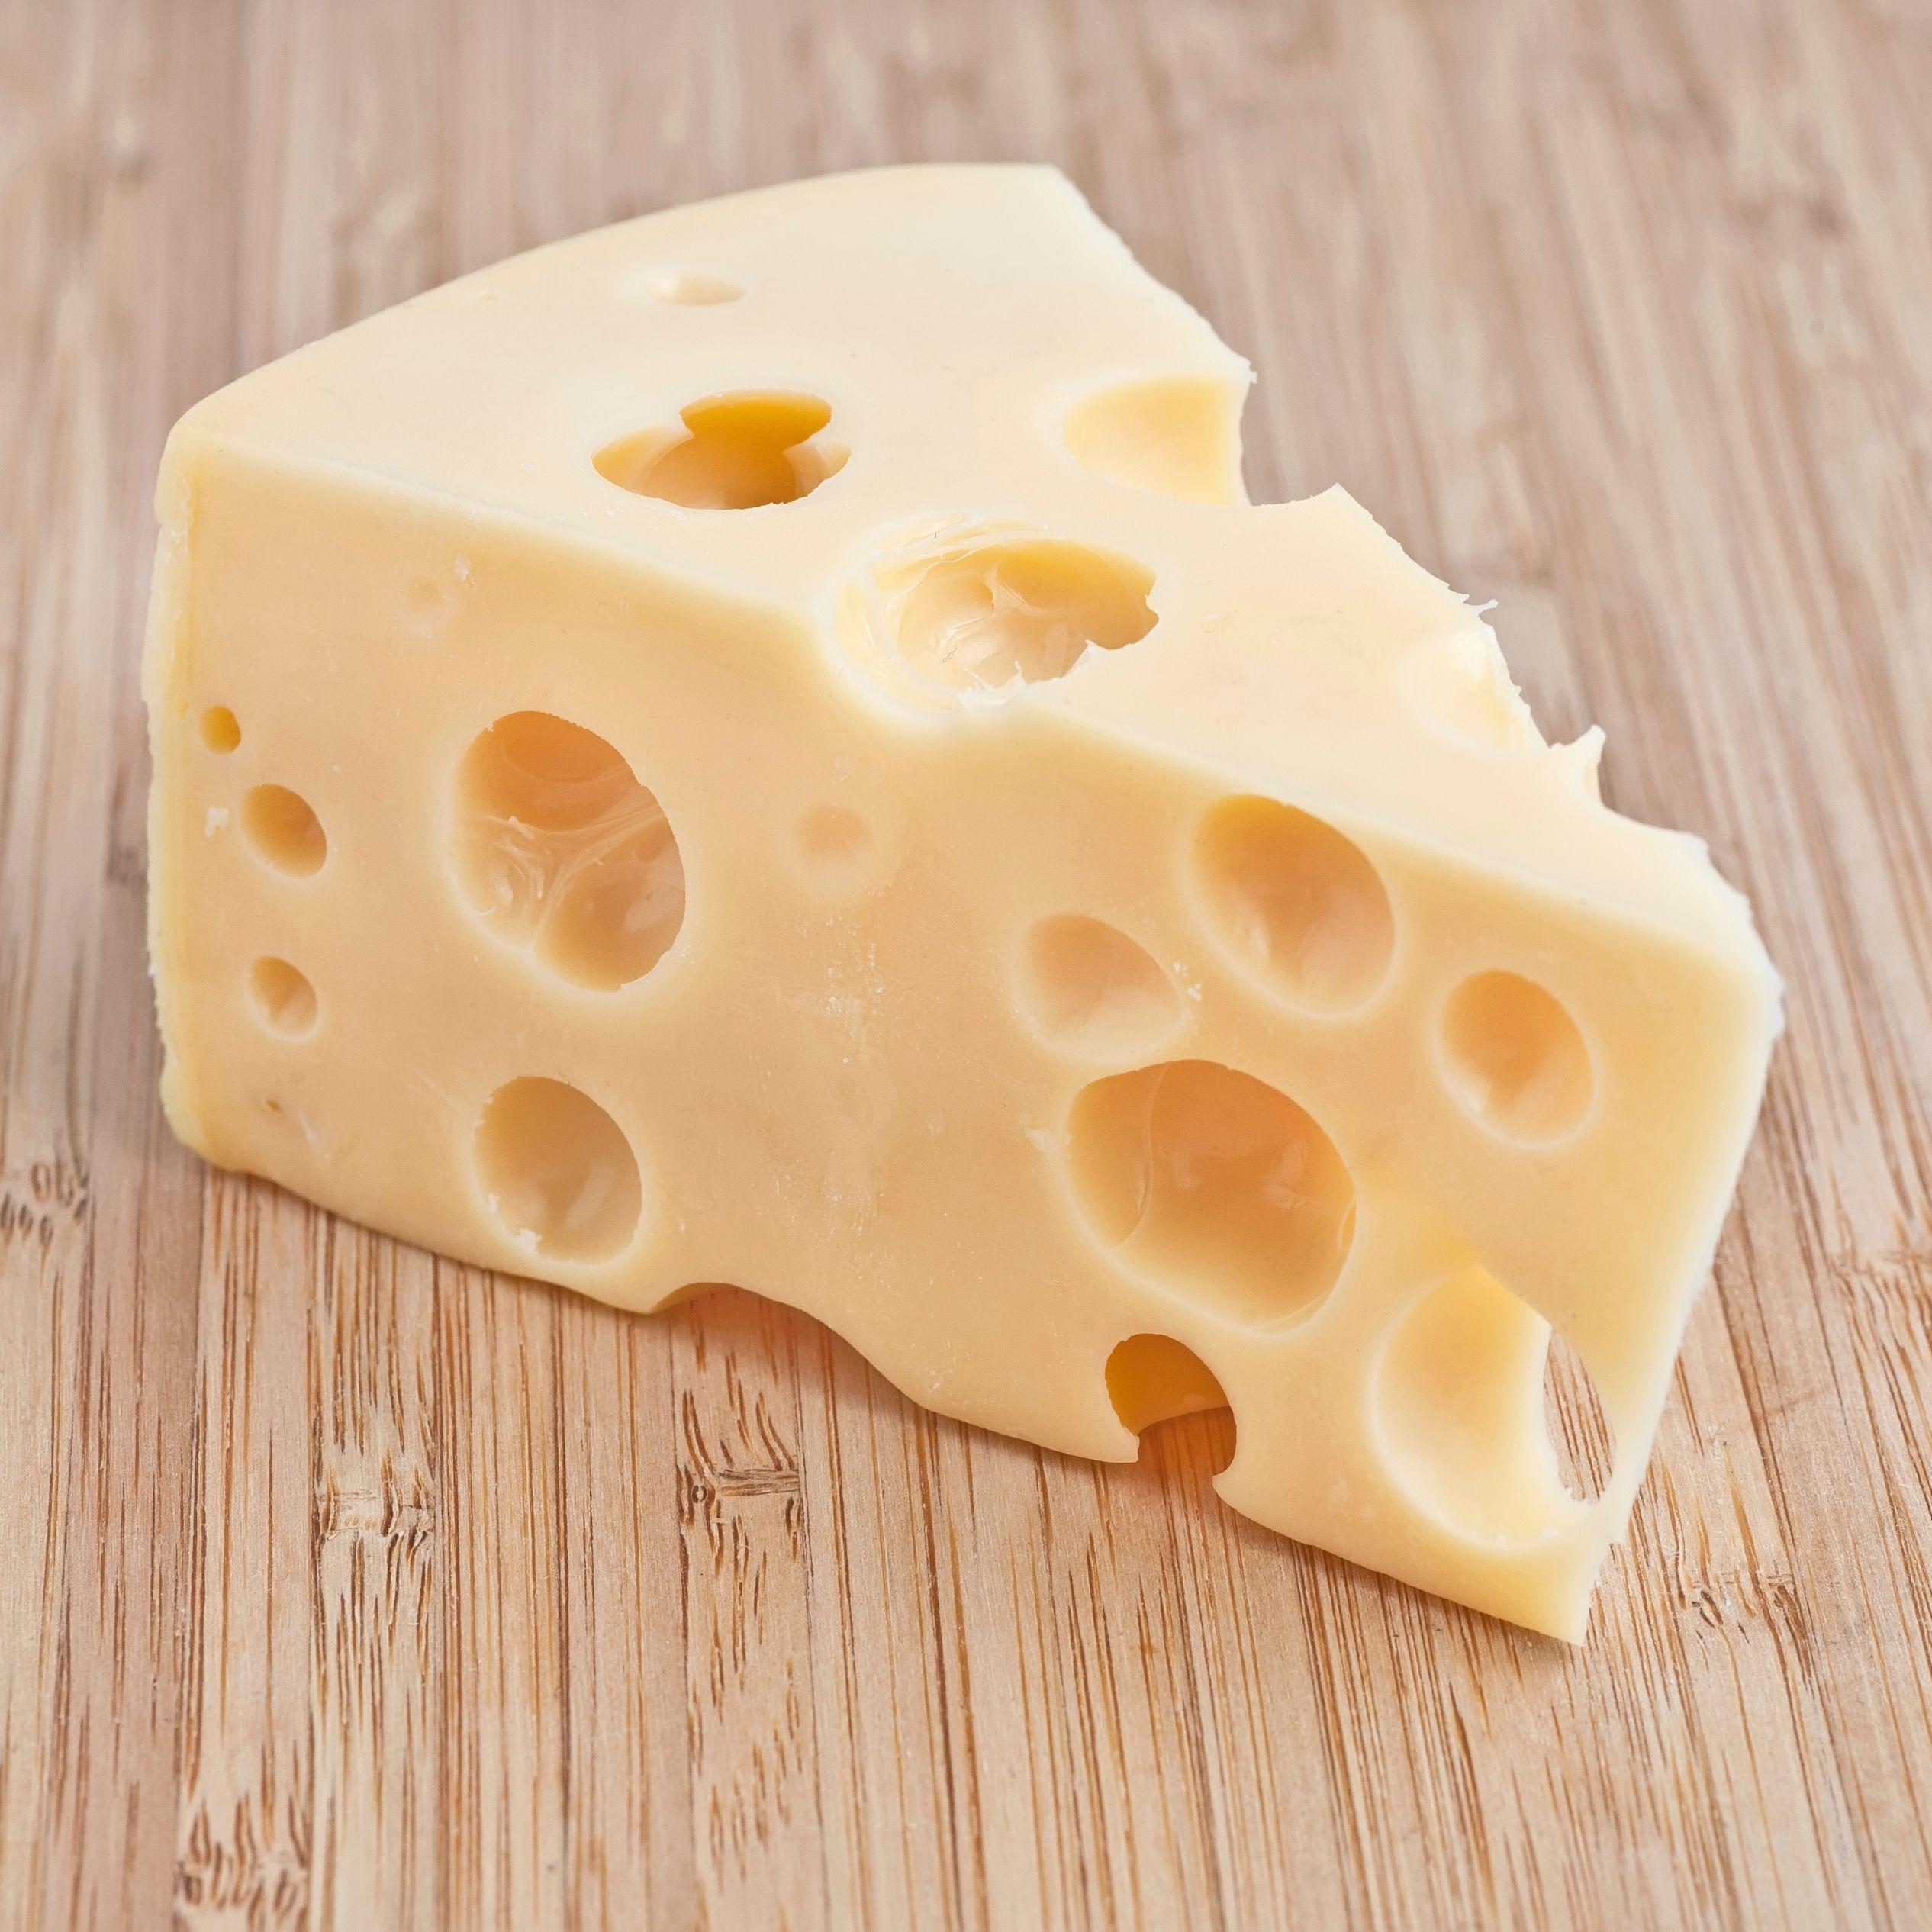 Сыр. Сыр с дырочками название. Сыр треугольный. Ломтик сыра.